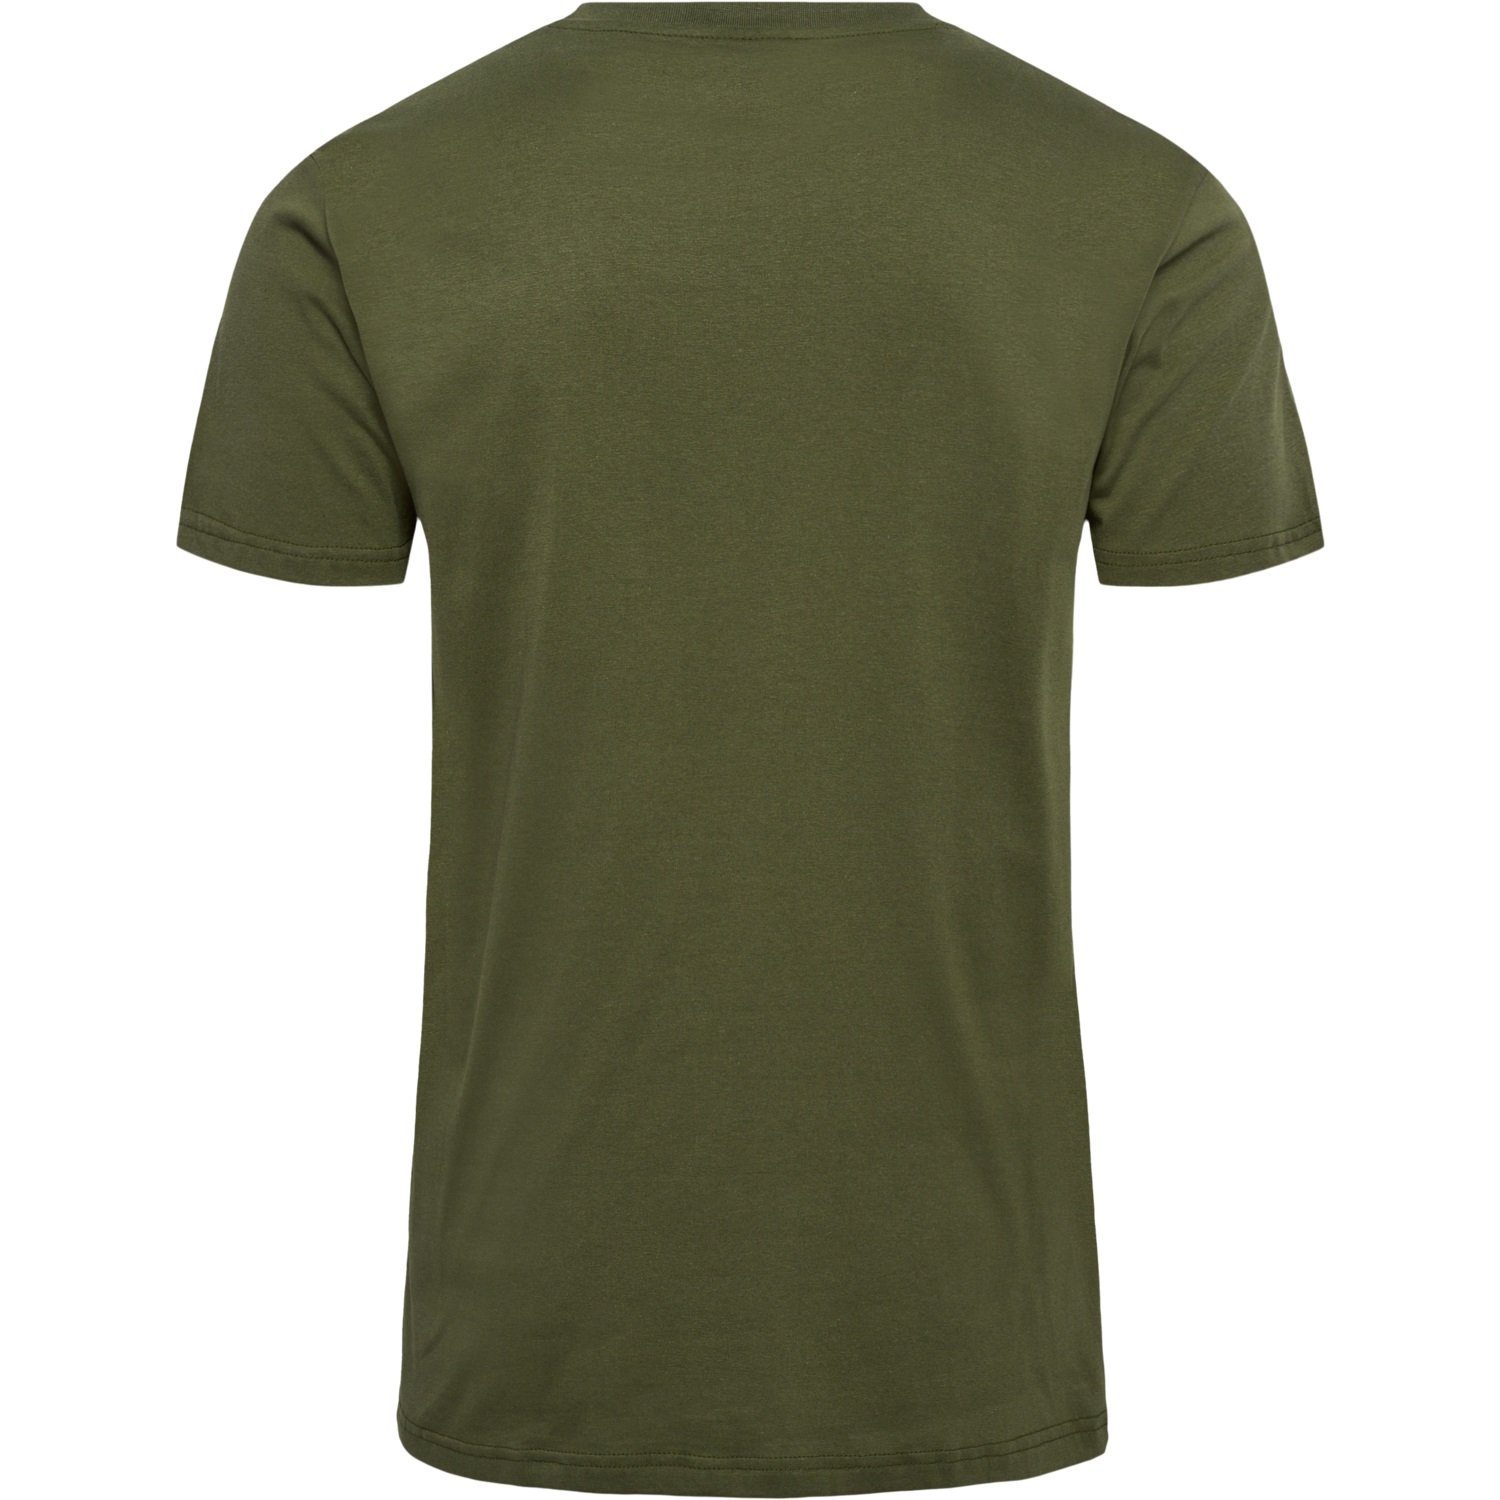 hummel T-Shirt Funktionsshirt T-Shirt Sport 5788 Olive Jersey in Kurzarm